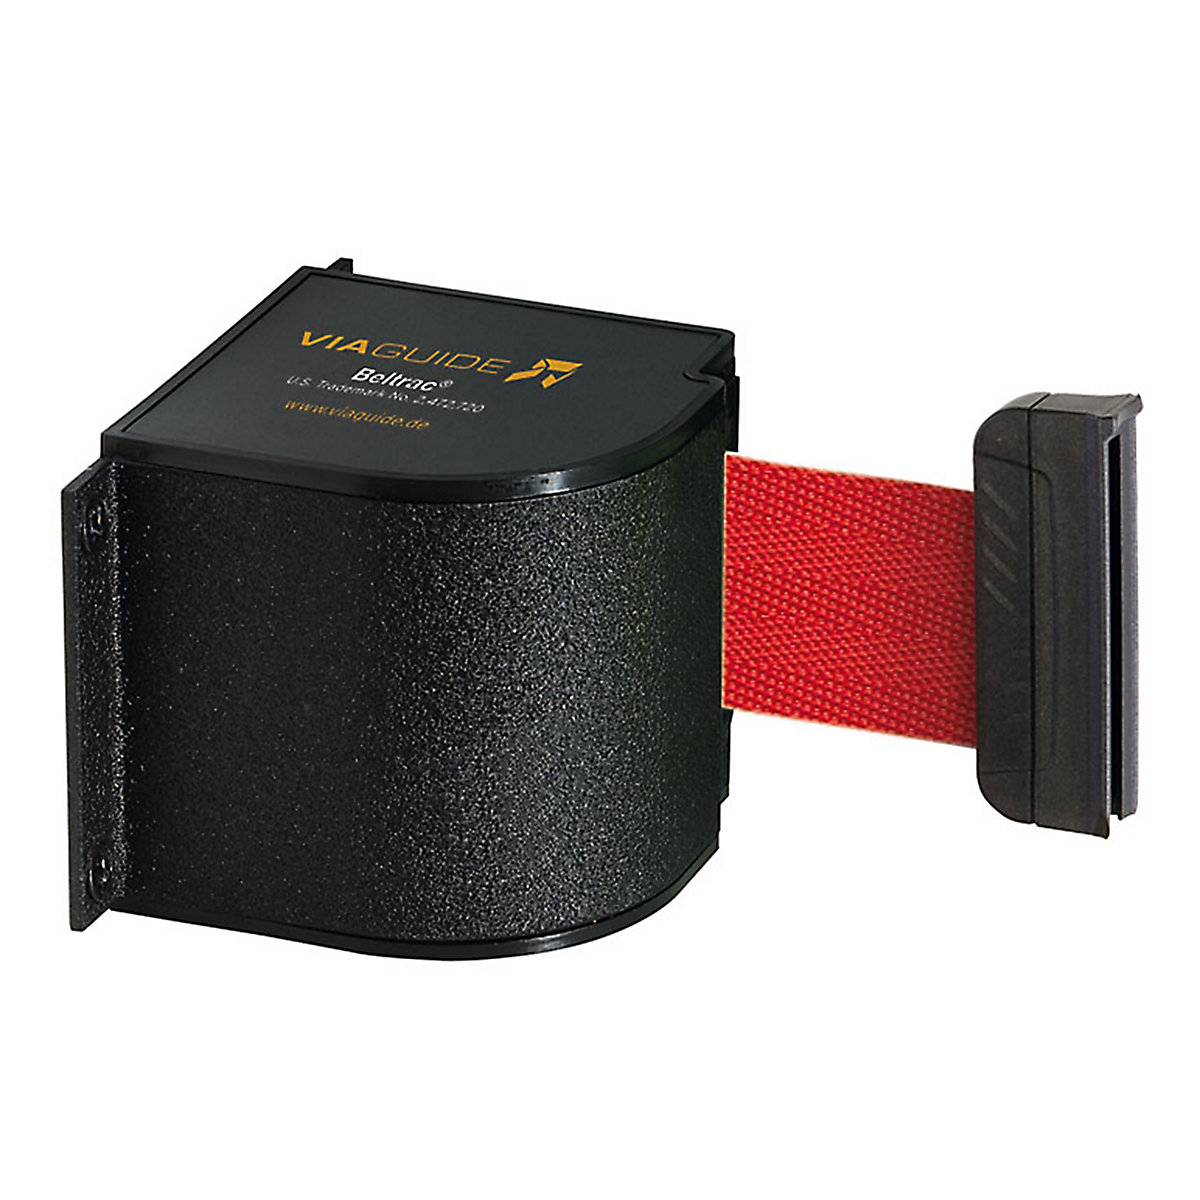 Cassetta per nastro Wall Mount, estrazione nastro max 5400 mm, nastro rosso-6